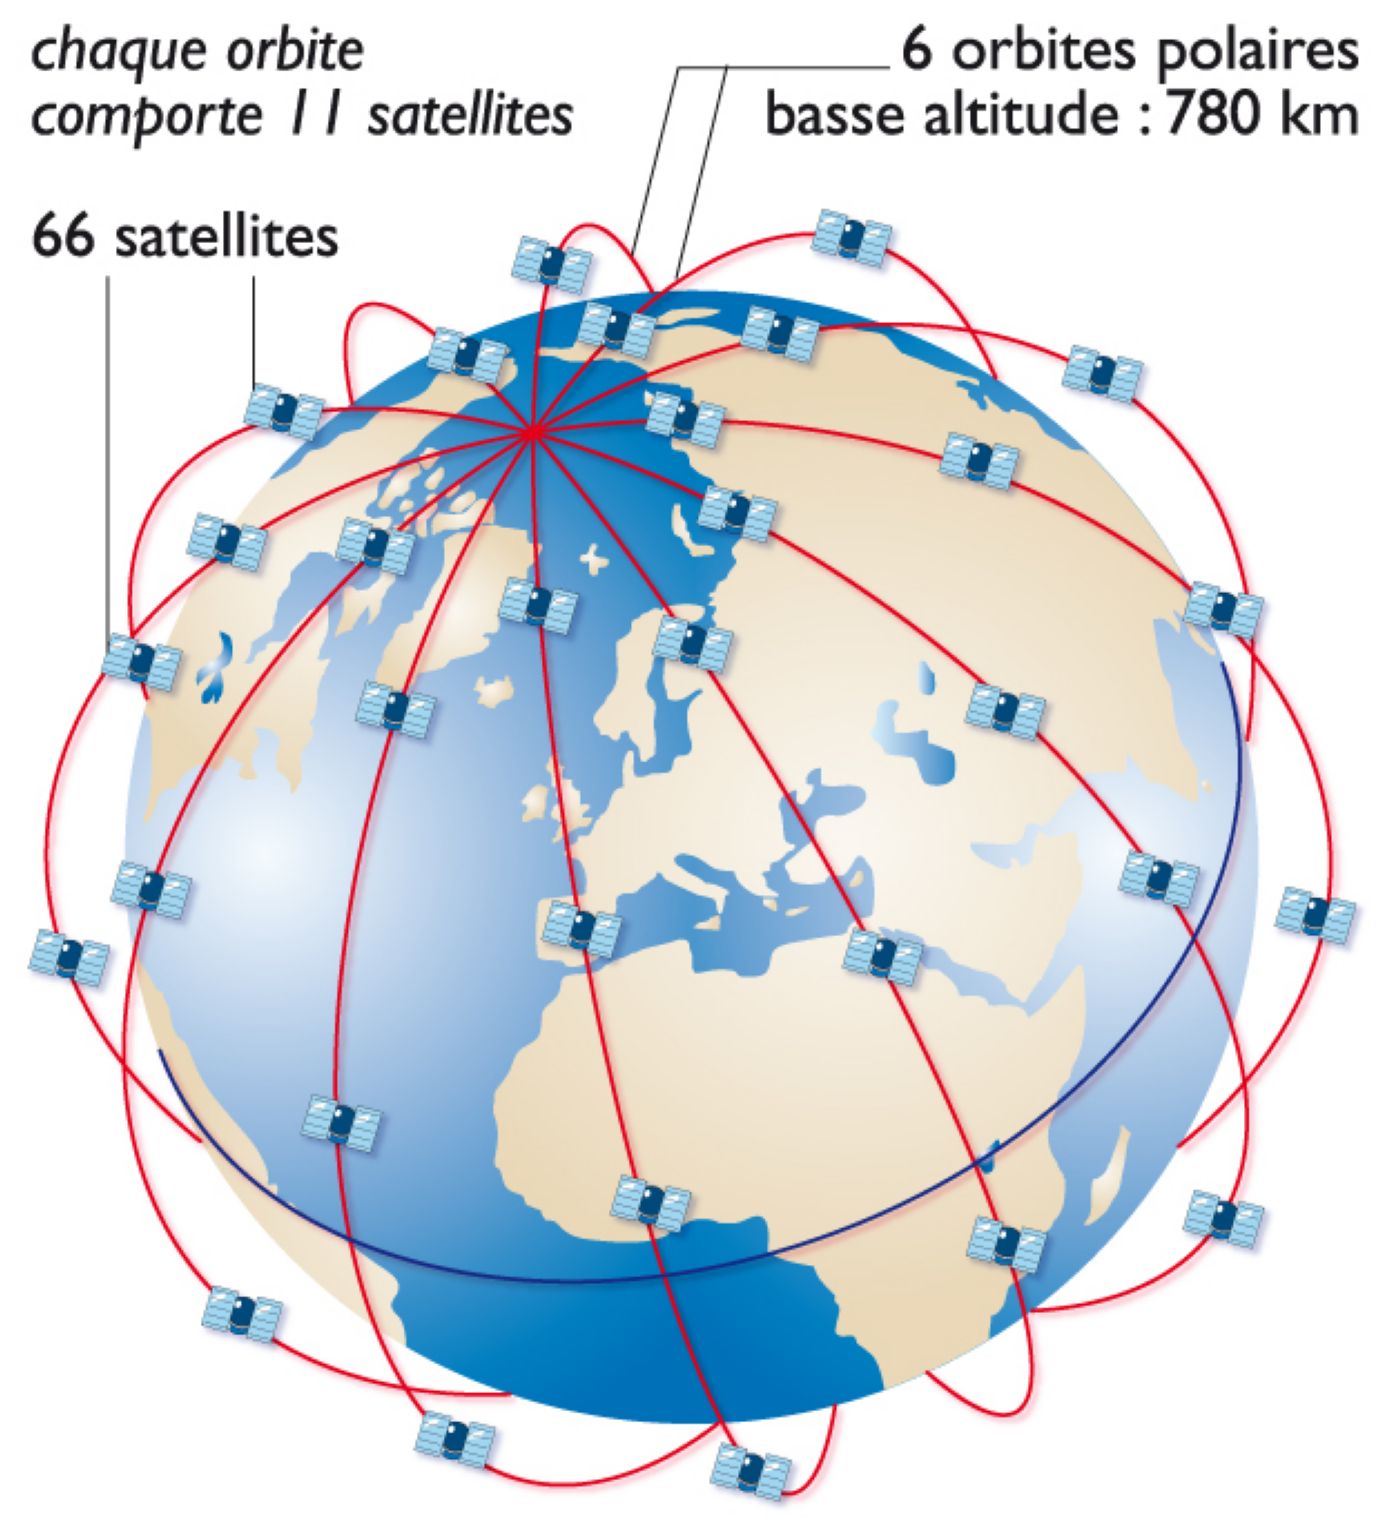 constellation de satellites du réseau mondial Iridium de téléphonie avec les mobiles (66 satellites répartis sur 6 orbites polaires)